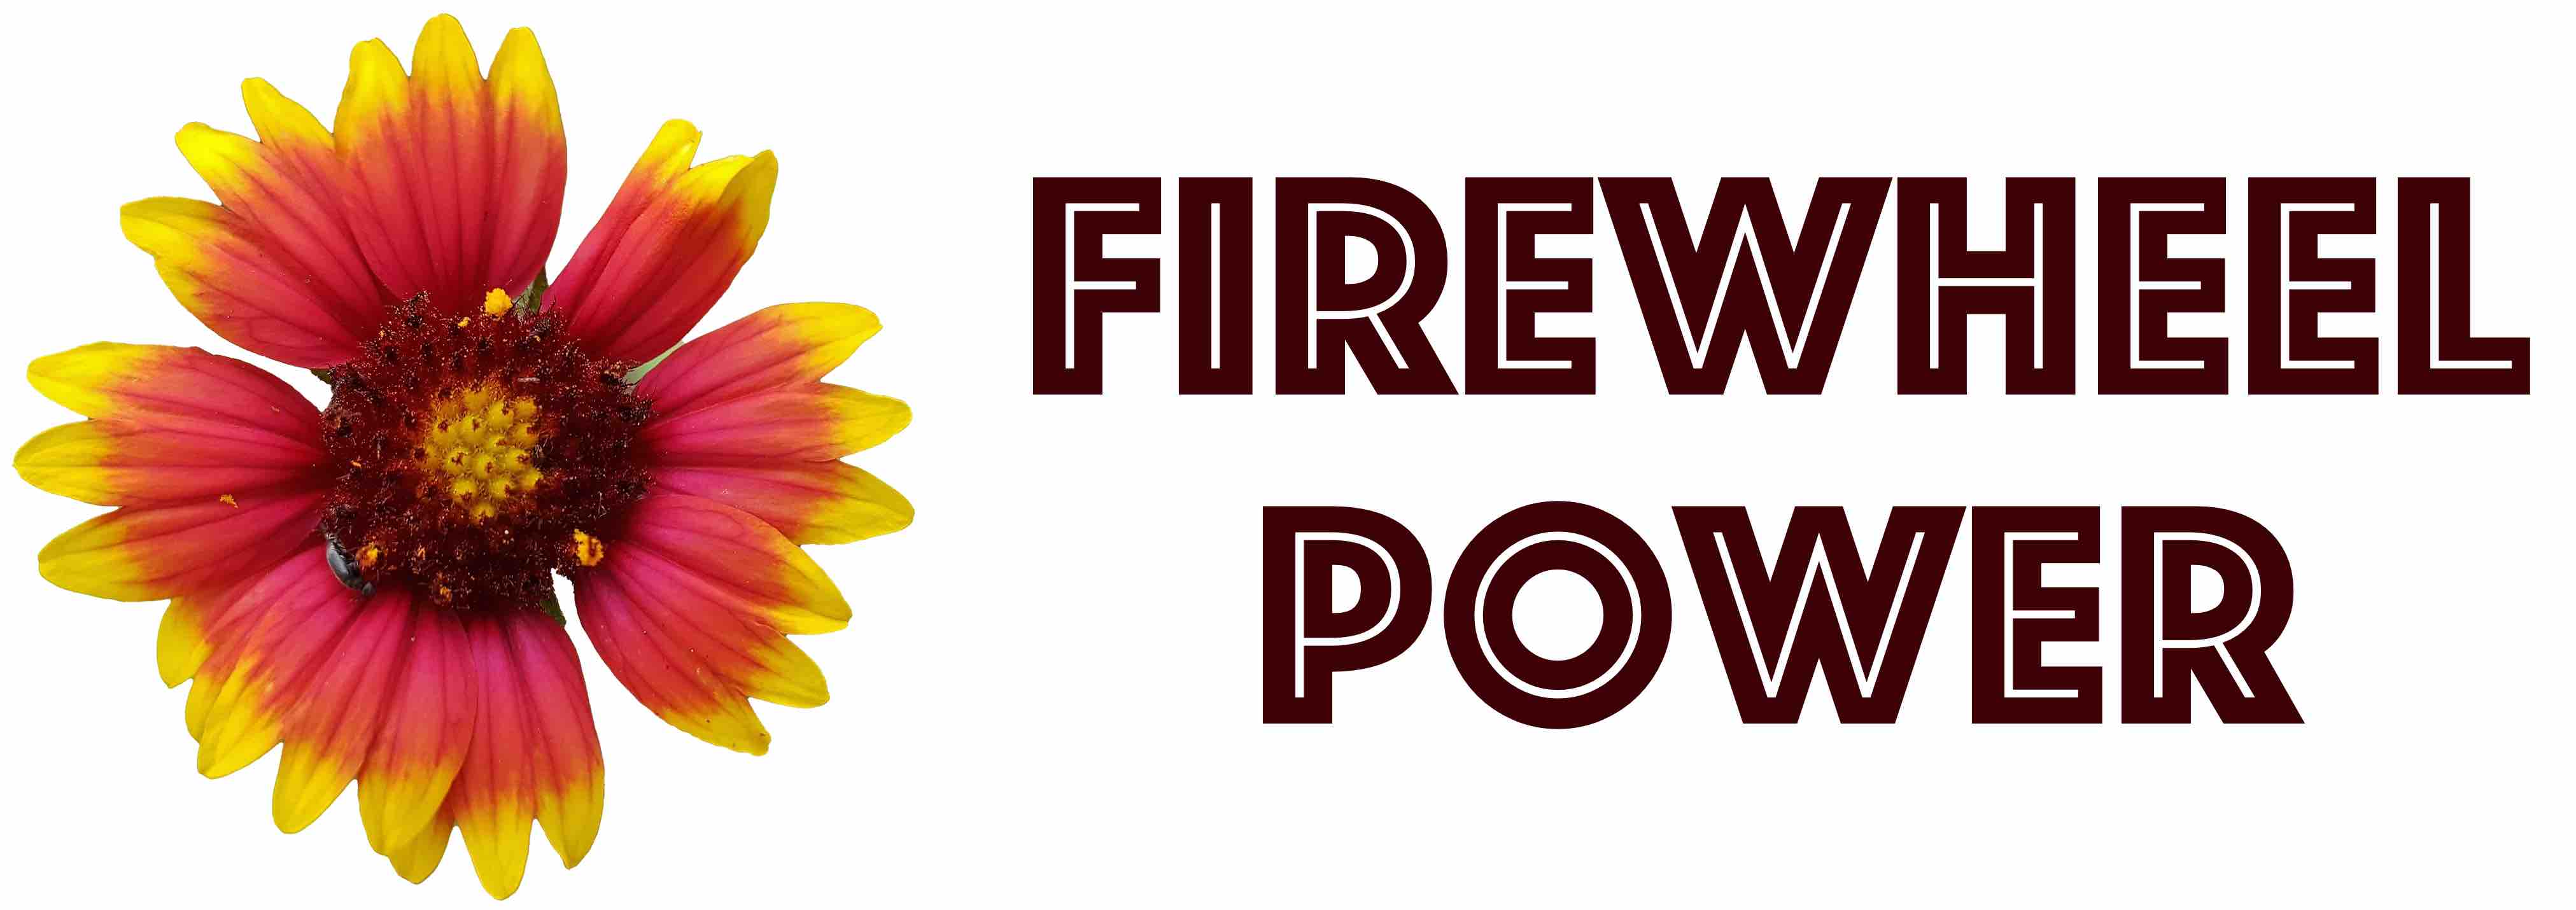 Firewheel Power